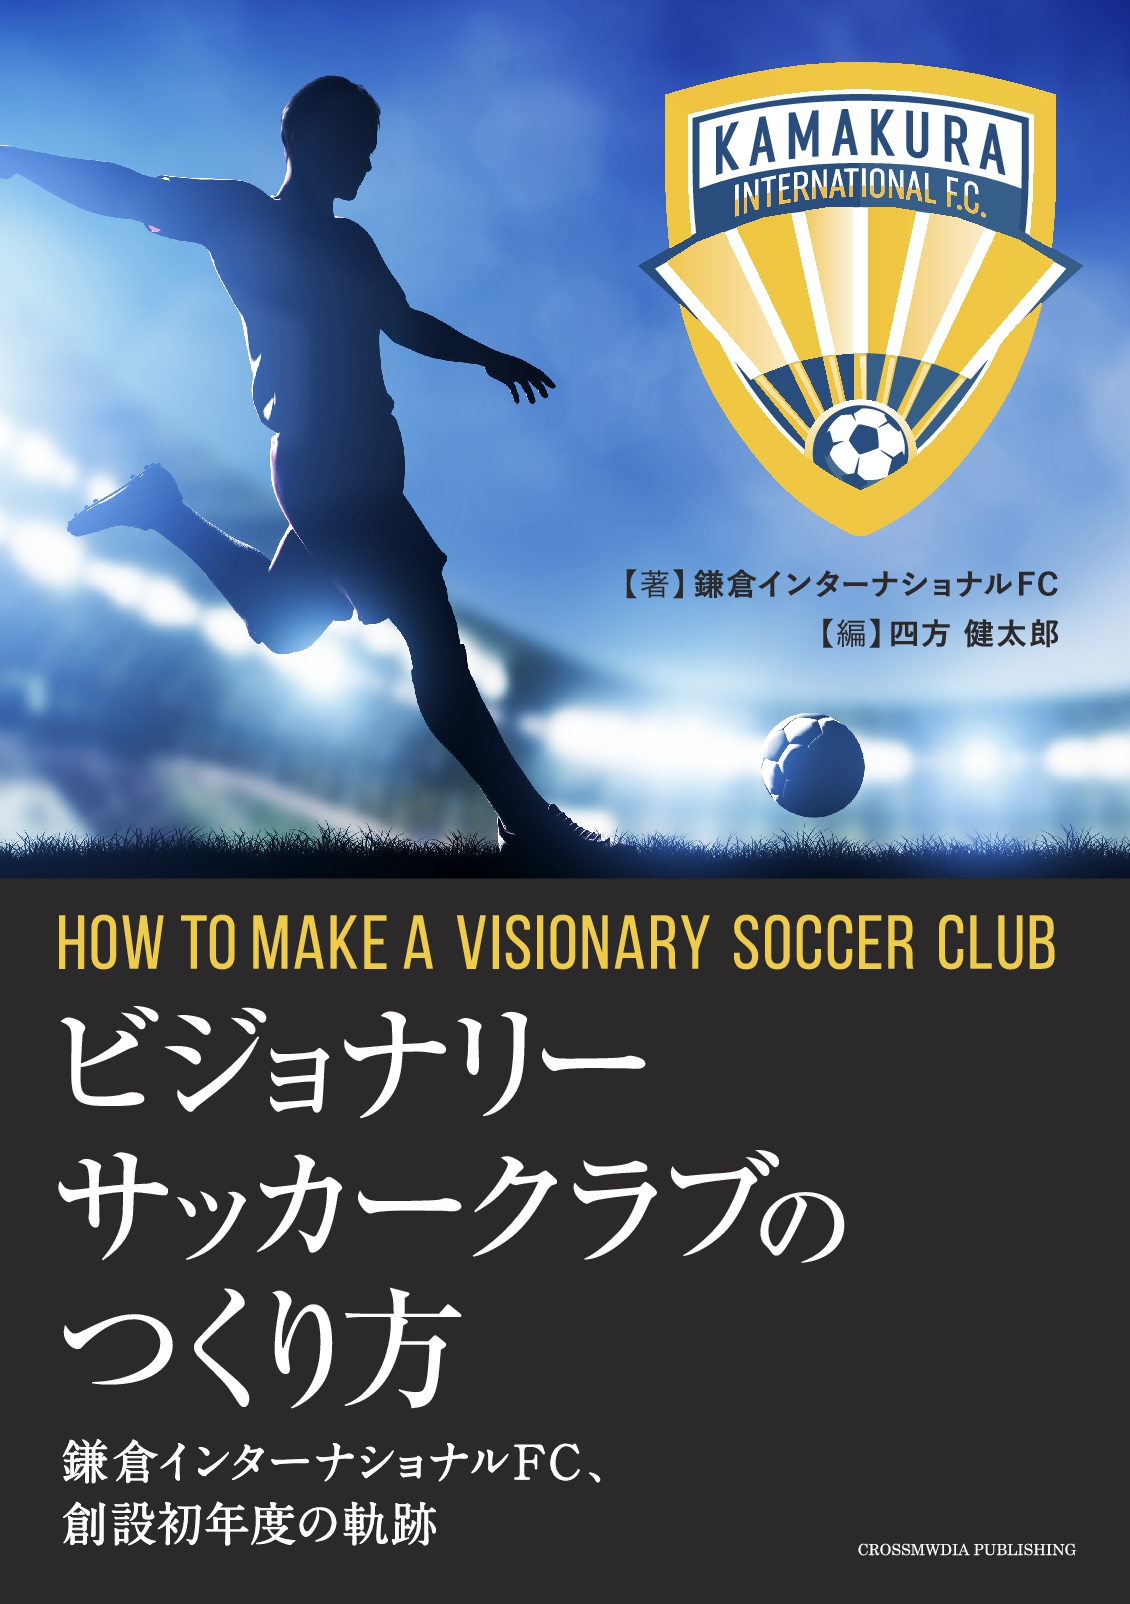 ビジョナリーサッカークラブのつくり方 鎌倉インターナショナルfc 創設初年度の軌跡 電子書籍とプリントオンデマンド Pod Nextpublishing ネクストパブリッシング